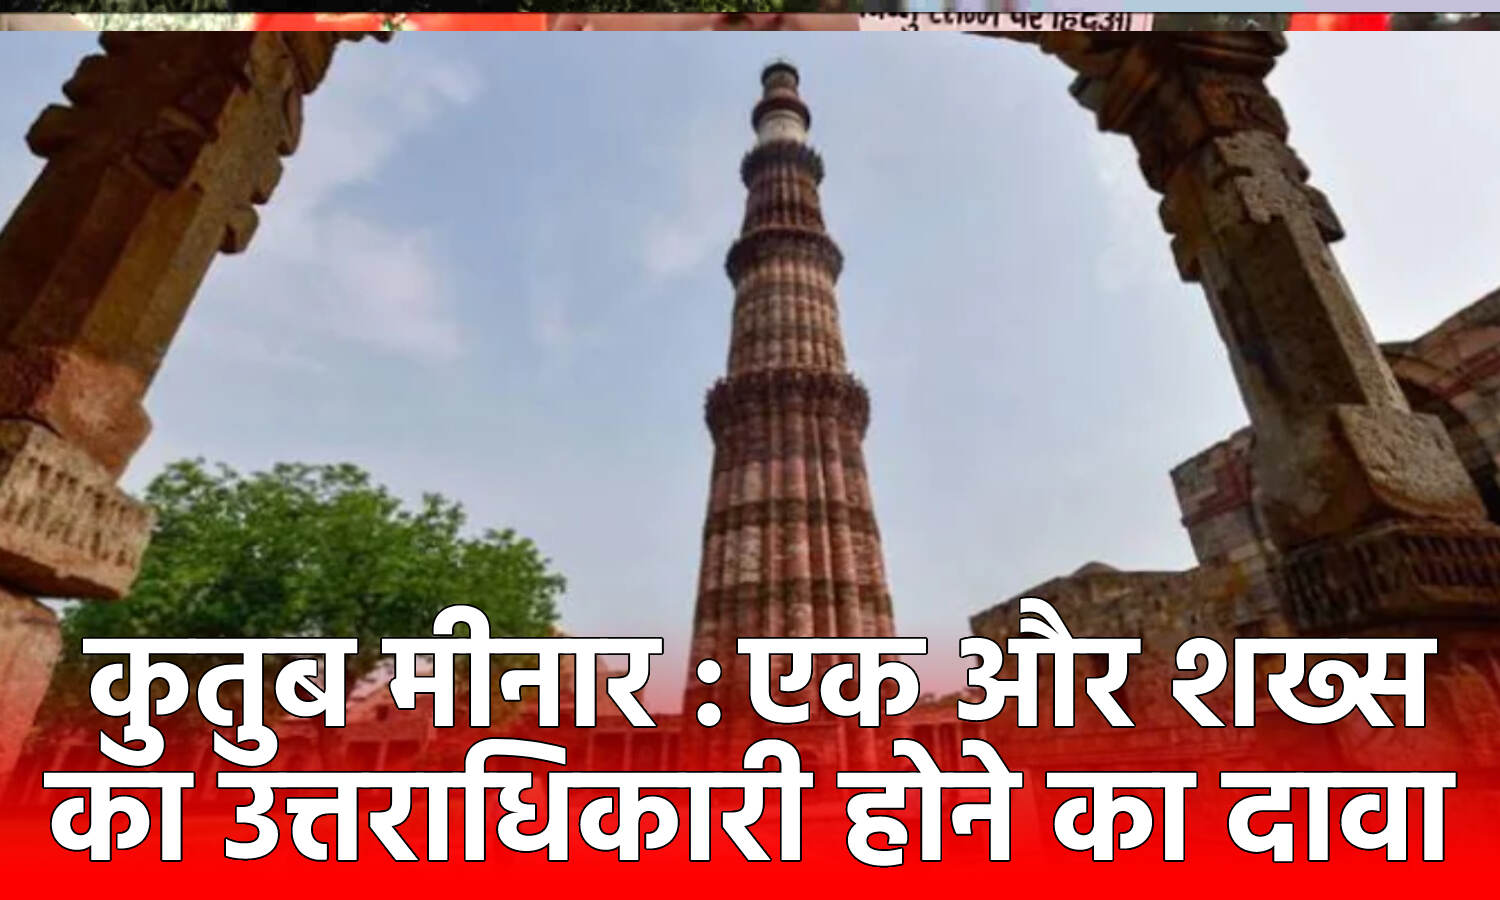 Qutub Minar Controversy : कुतुब मामले में आया नया मोड़, शाही परिवार के 1 शख्स ने साकेत कोर्ट में मालिकाना हक का दावा ठोका